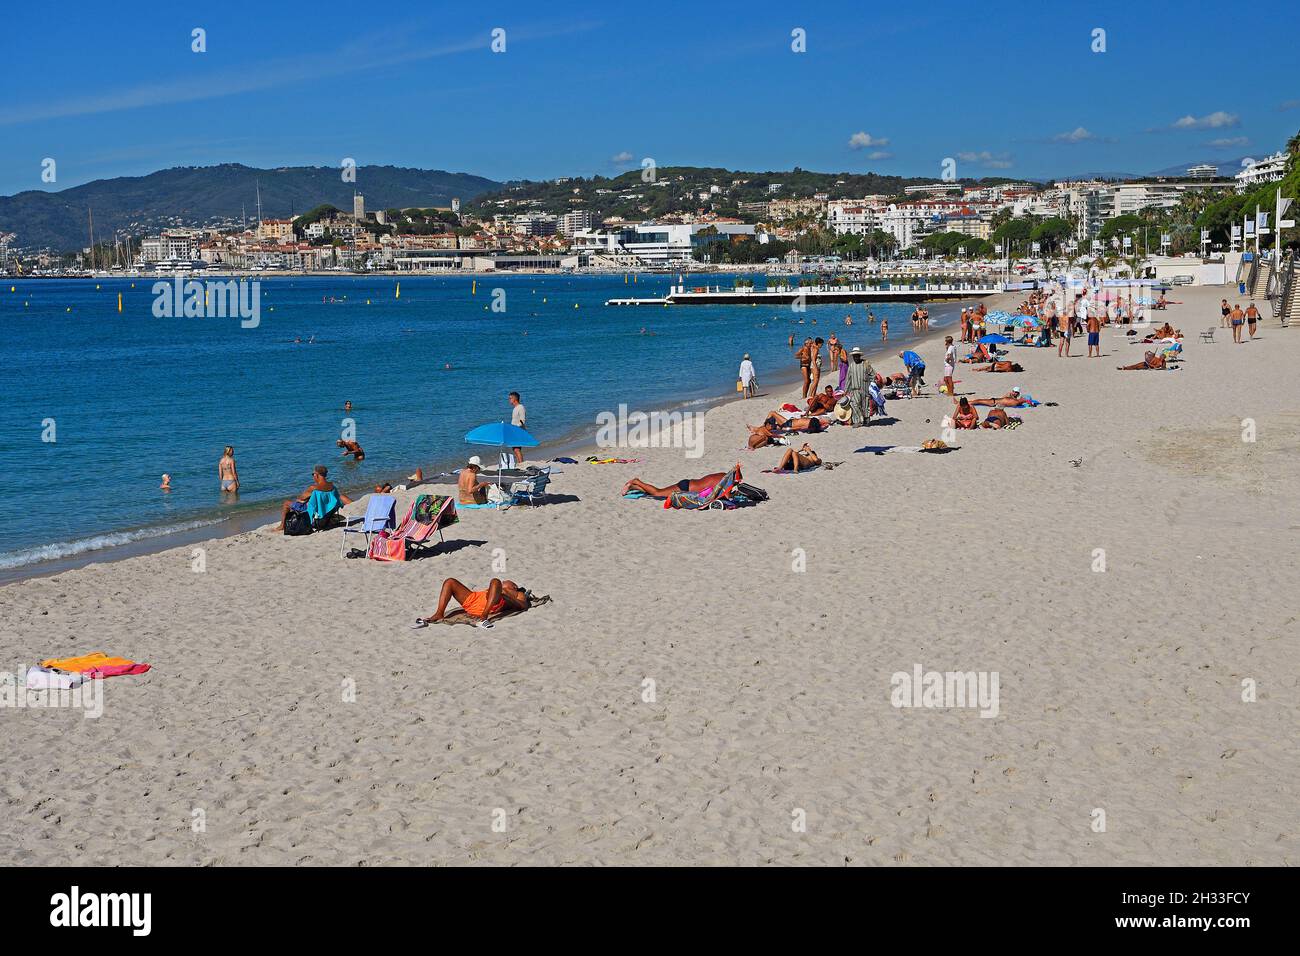 Strand und Bucht von Cannes, Côte d'Azur, Provence-Alpes-Côte d'Azur,  Südfrankreich, Frankreich Stock Photo - Alamy